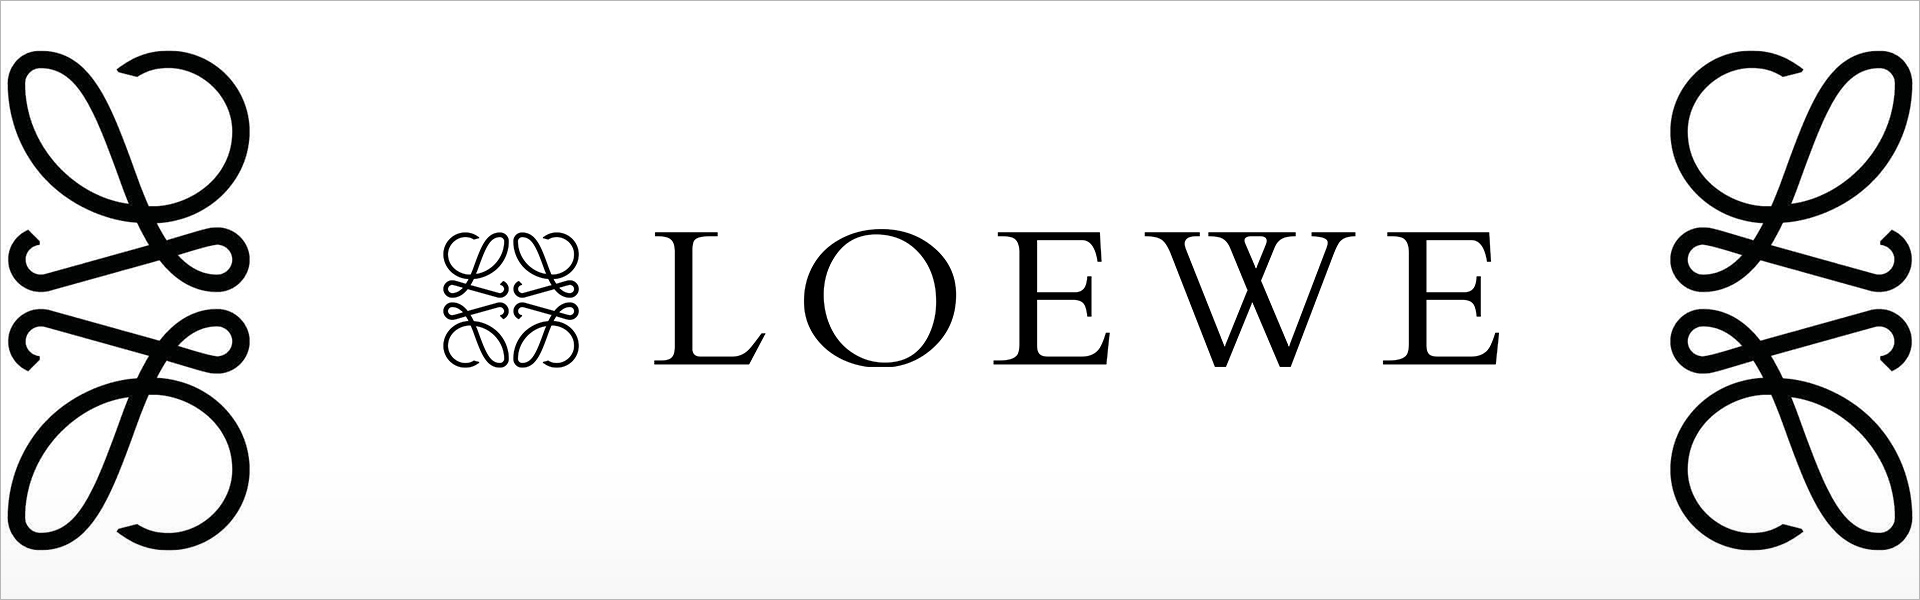 Loewe Туалетная вода Solo Loewe Cedro Loewe